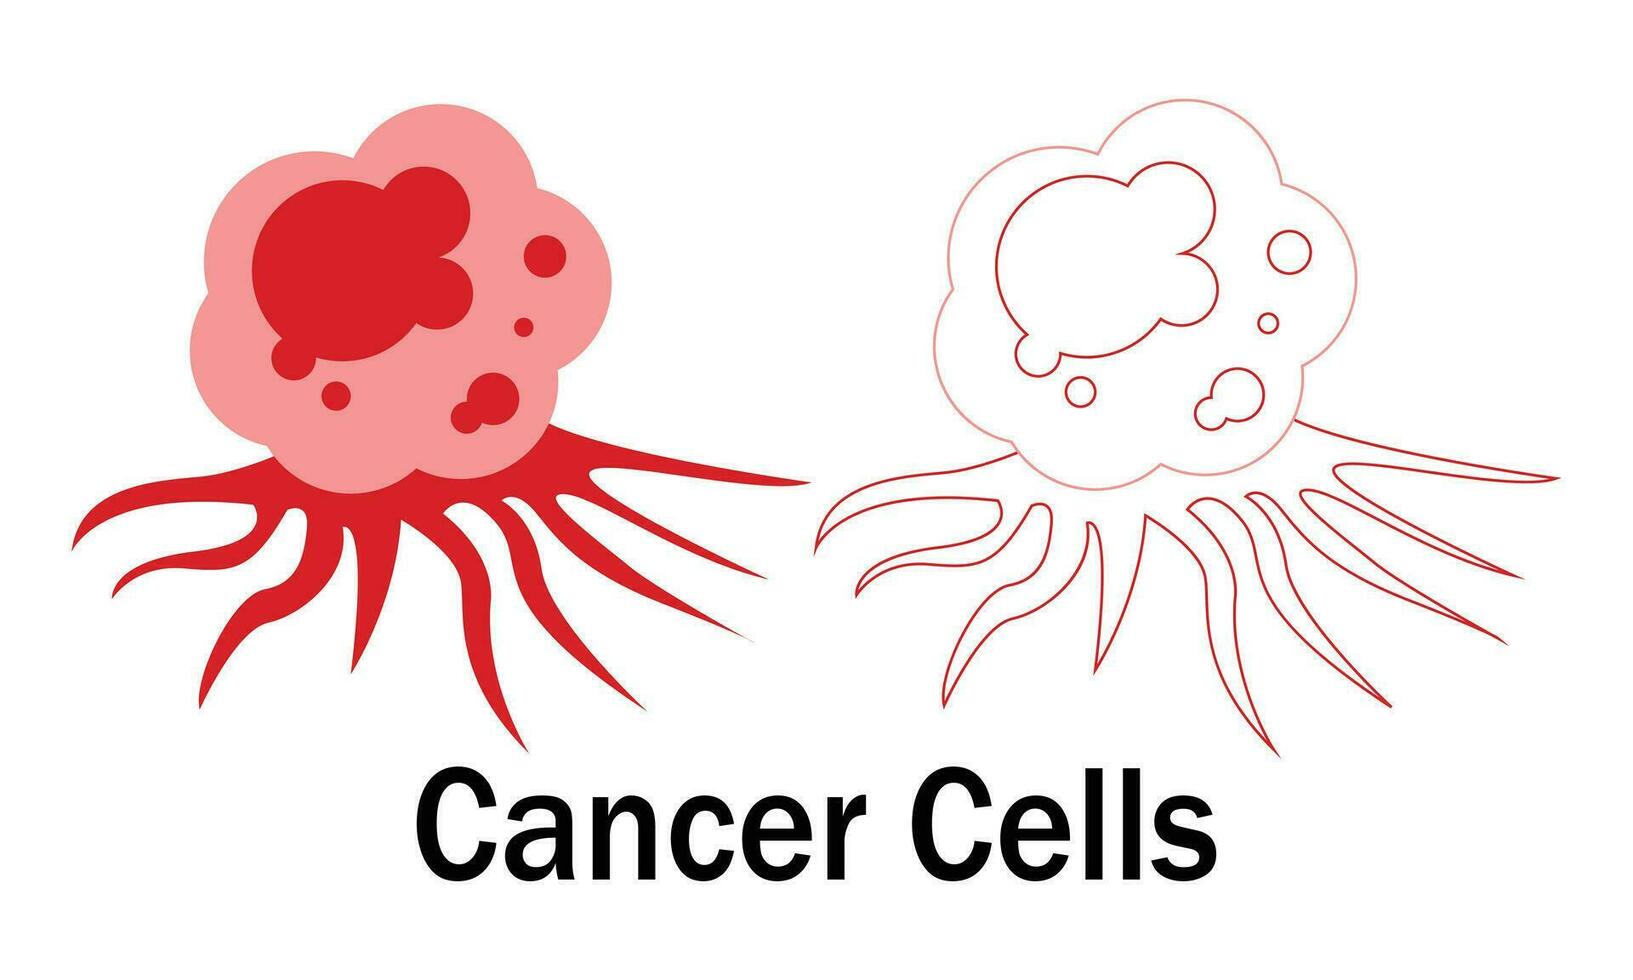 normale cellula e cancro cellula vettore disegno, vettore illustrazione design